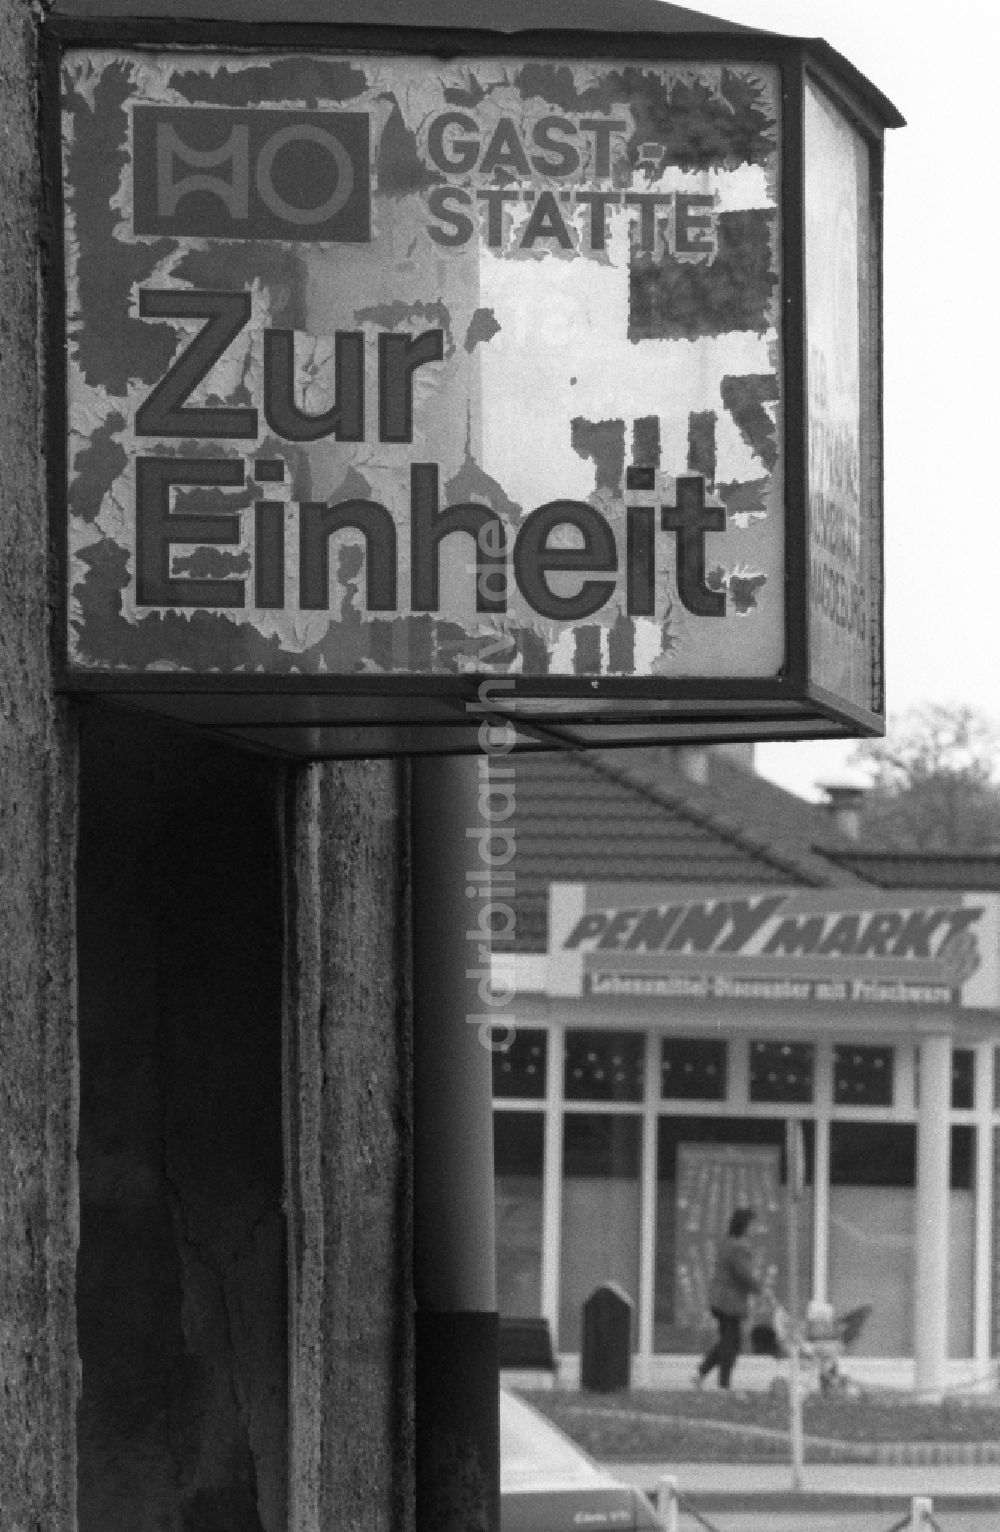 Staßfurt: Werbeschild einer ehemaligen HO-Gaststätte Zur Einheit in Staßfurt im Bundesland Sachsen-Anhalt auf dem Gebiet der ehemaligen DDR, Deutsche Demokratische Republik